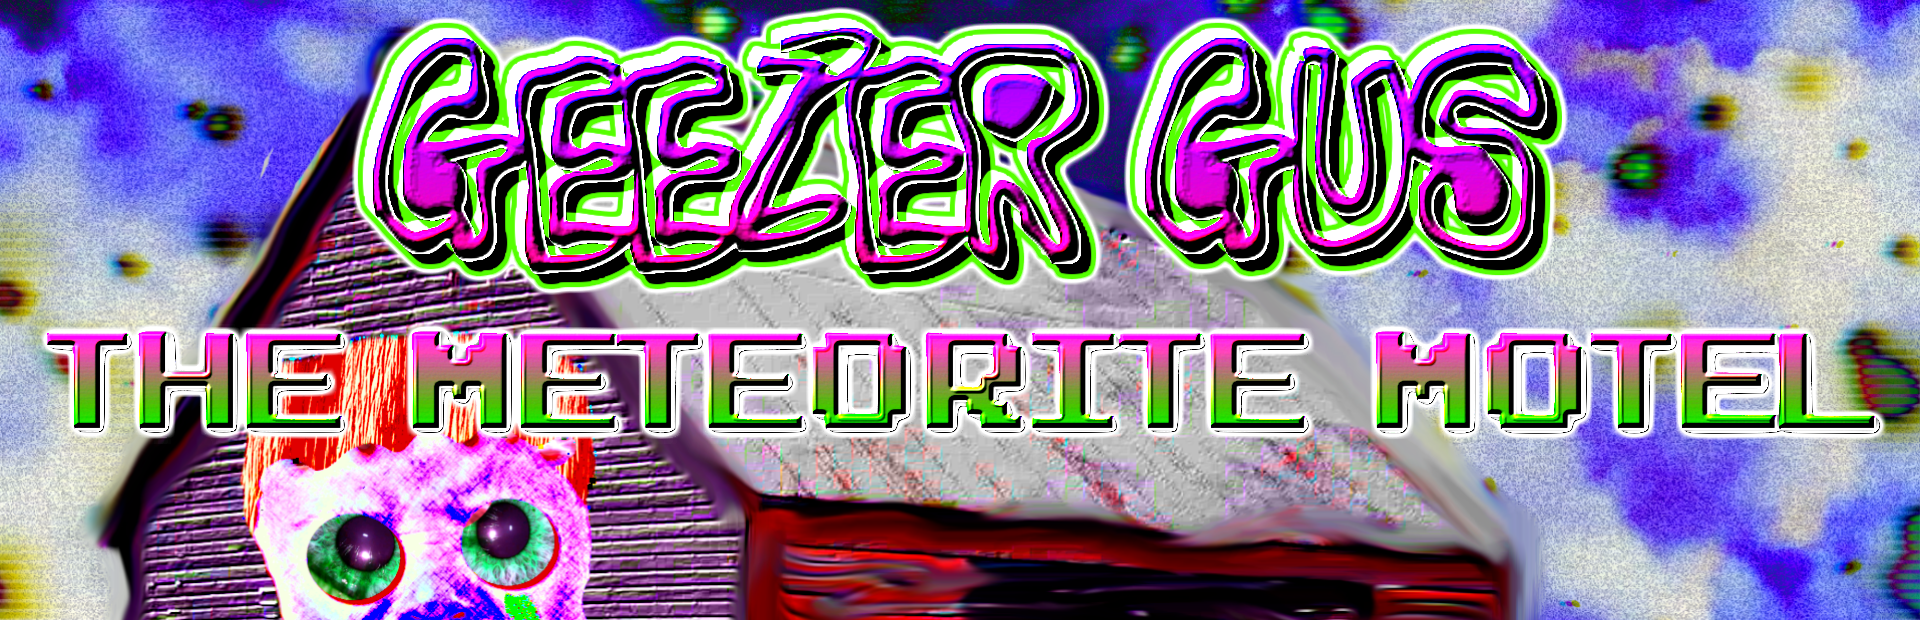 Geezer Gus: The Meteorite Motel